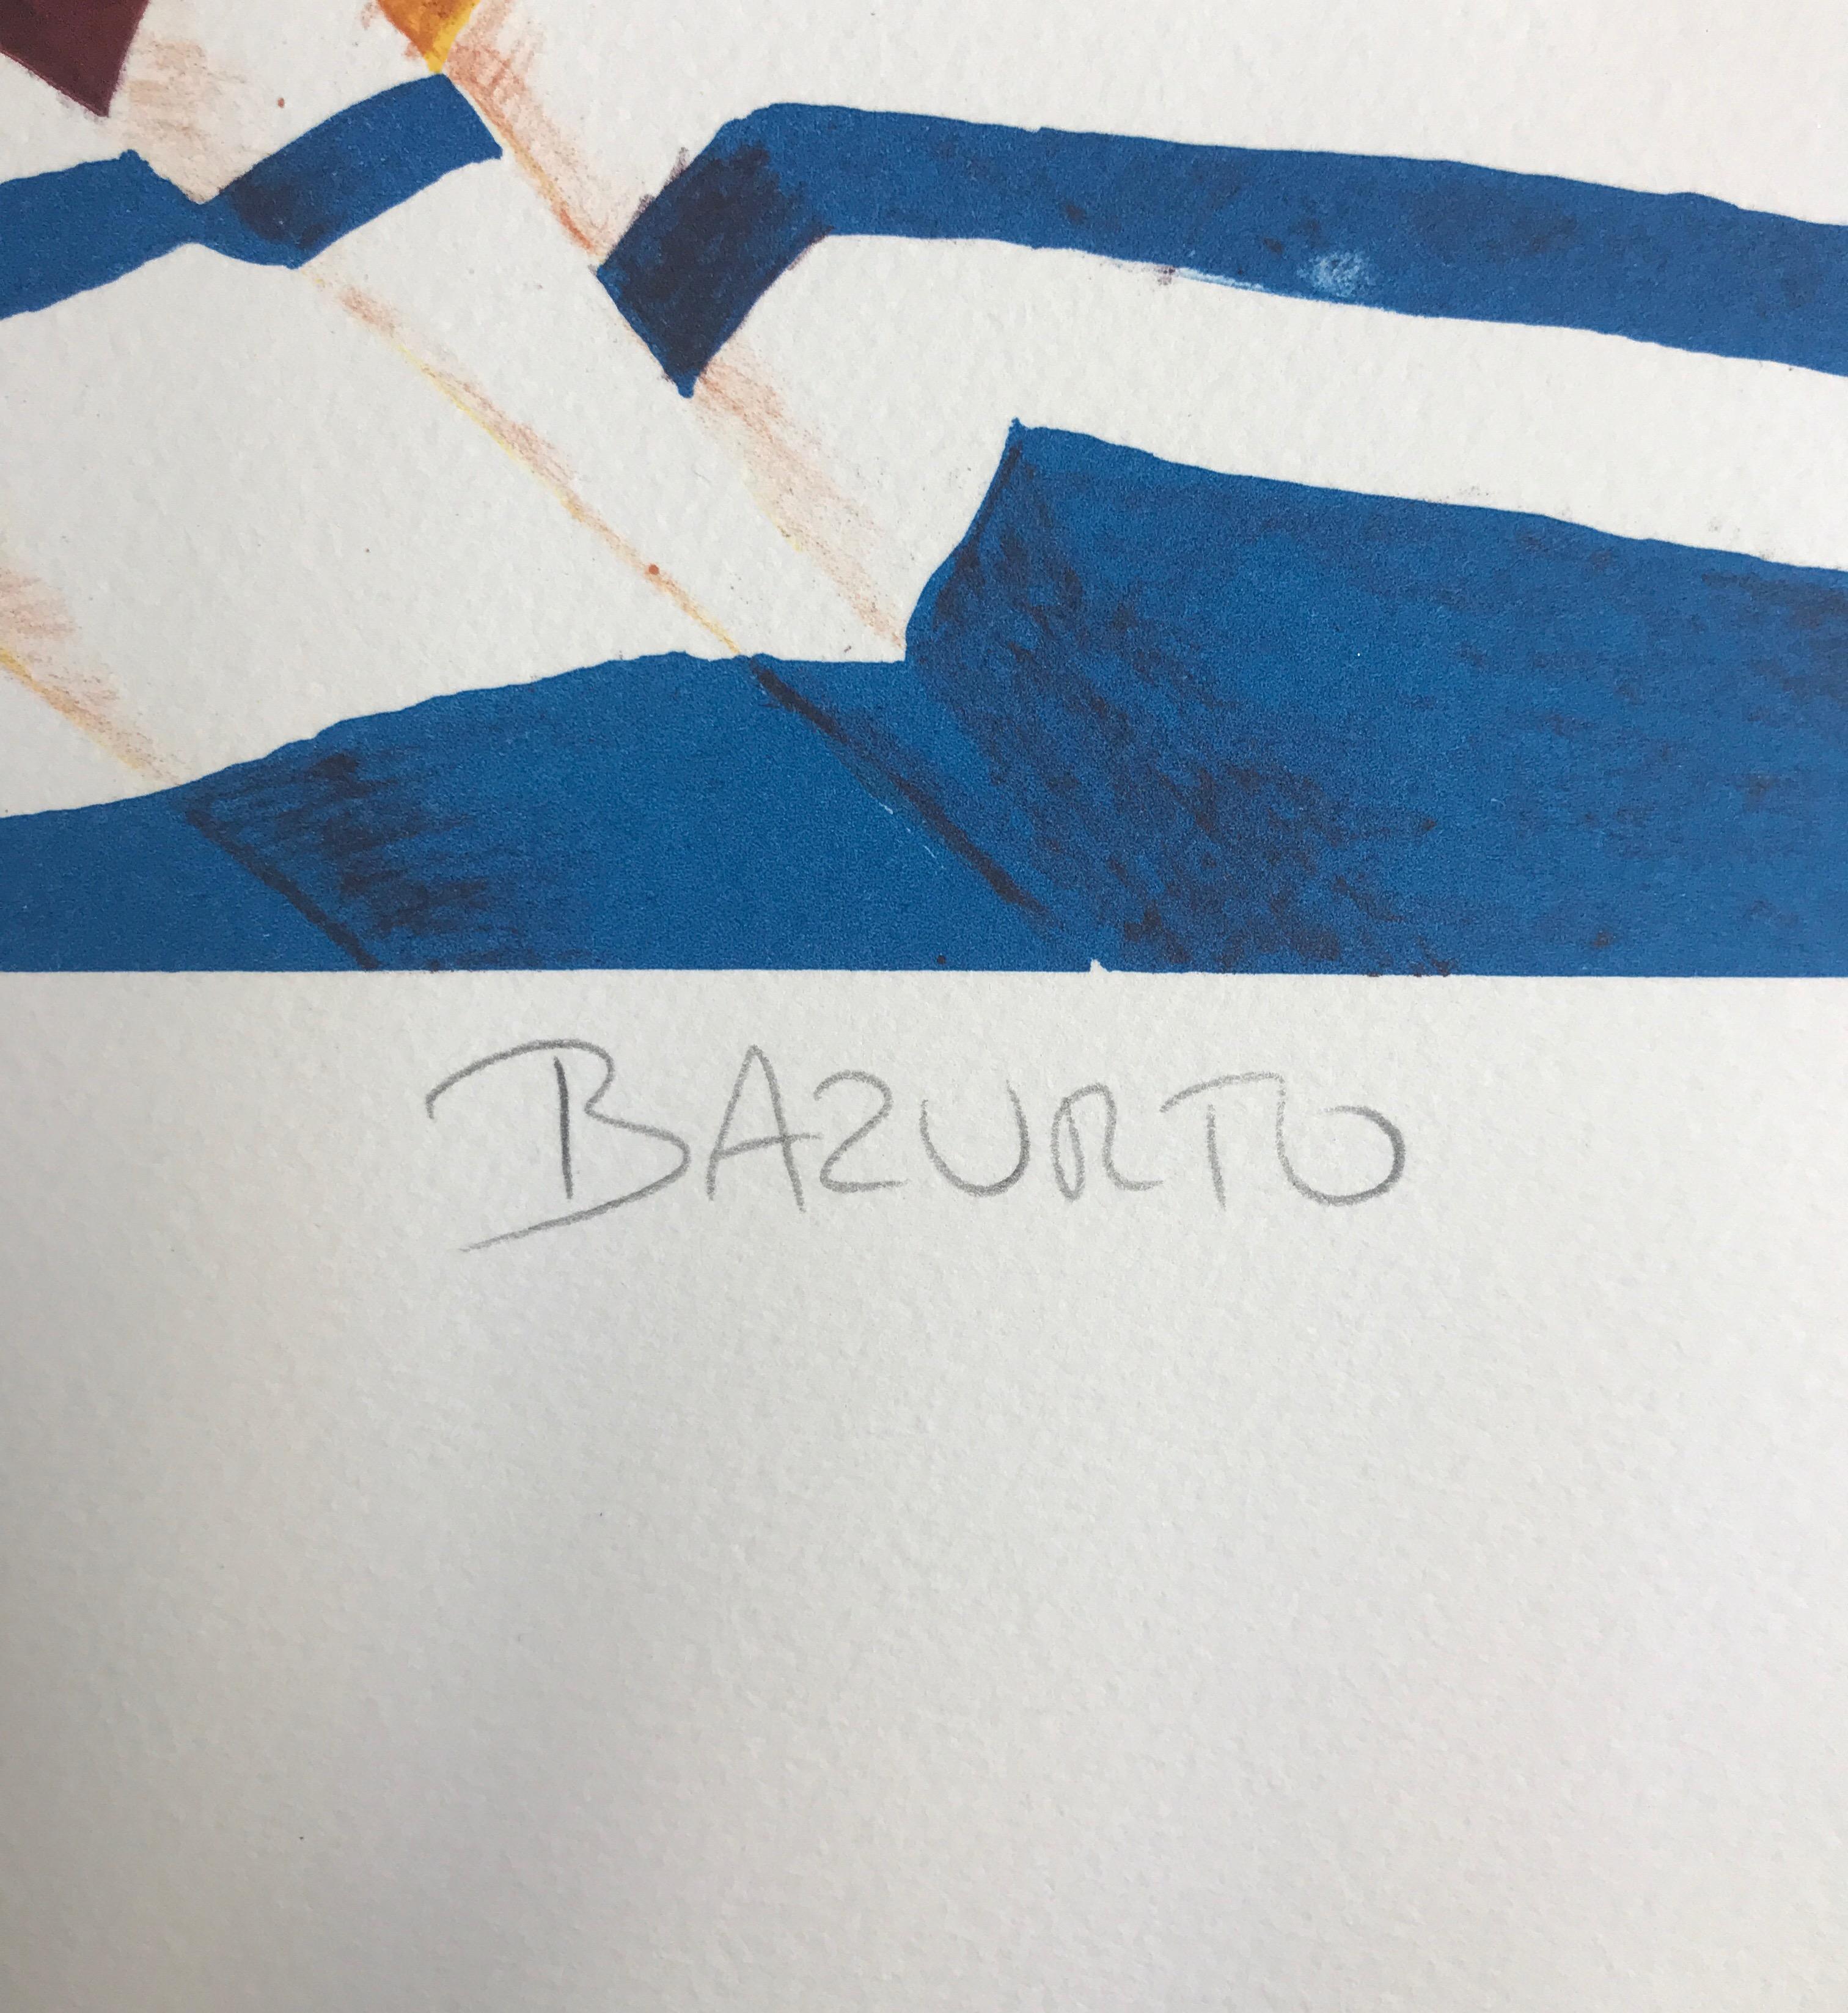 BAZURTO ist eine originale handgezeichnete Lithographie der bekannten kolumbianischen Künstlerin Ana Mercedes Hoyos (geb. 1942-2014), gedruckt in traditioneller Handlithographie-Technik auf archivfähigem Papier, 100% säurefrei. 
Hoyos' farbenfrohe